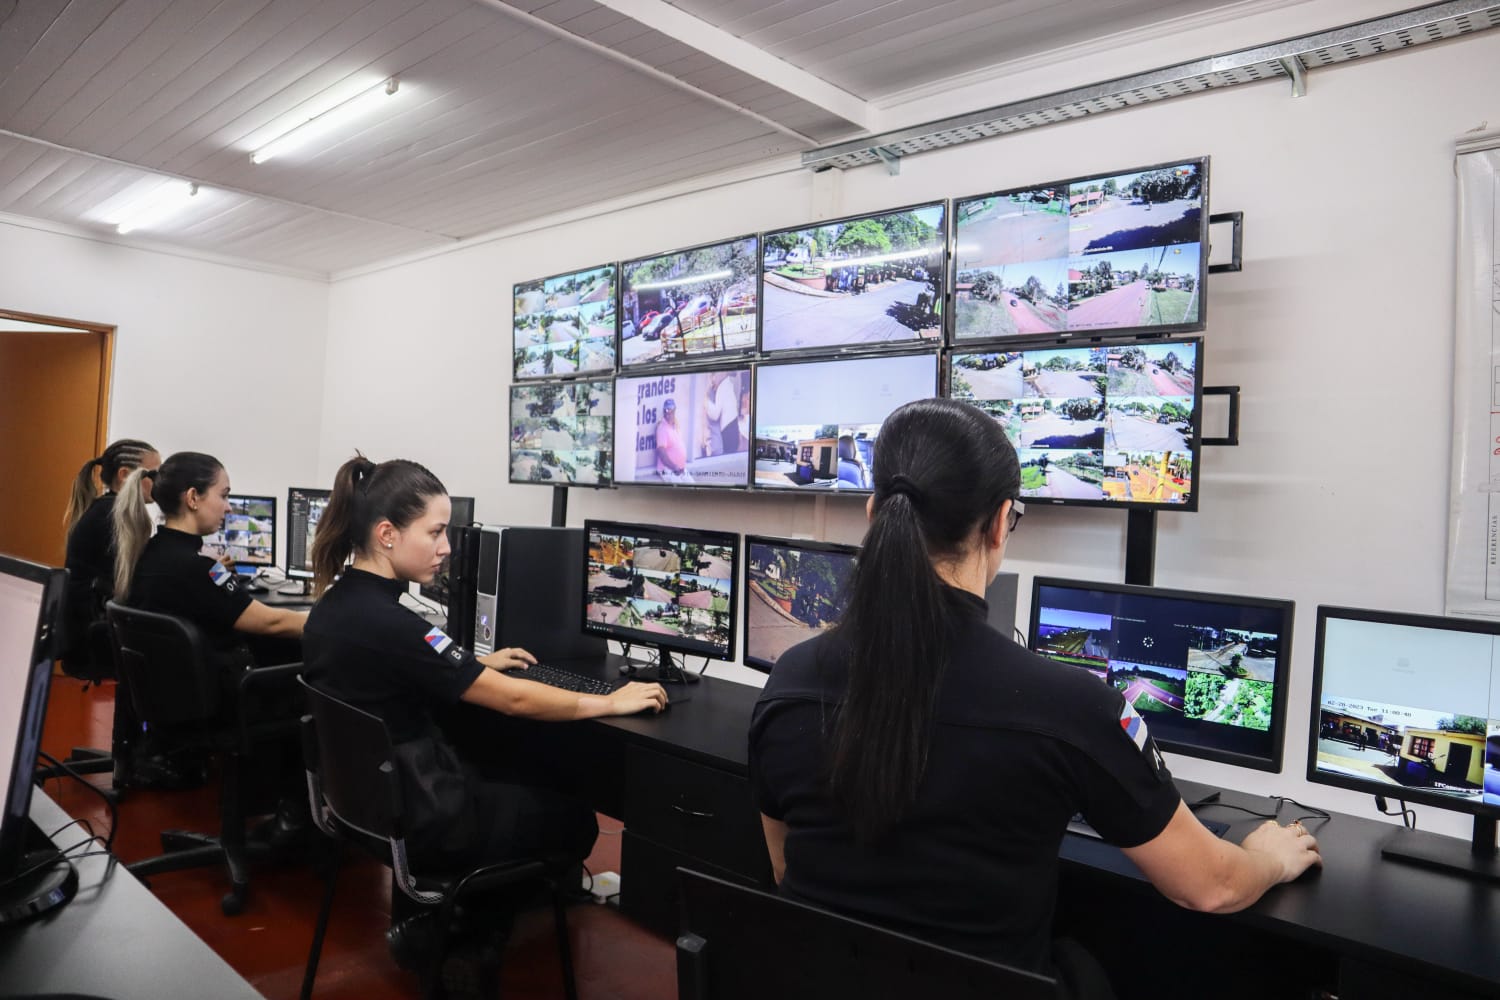 Red de videovigilancia interprovincial: una fuerte herramienta para el patrullaje ininterrumpido y la prevención de delitos, destacan imagen-4